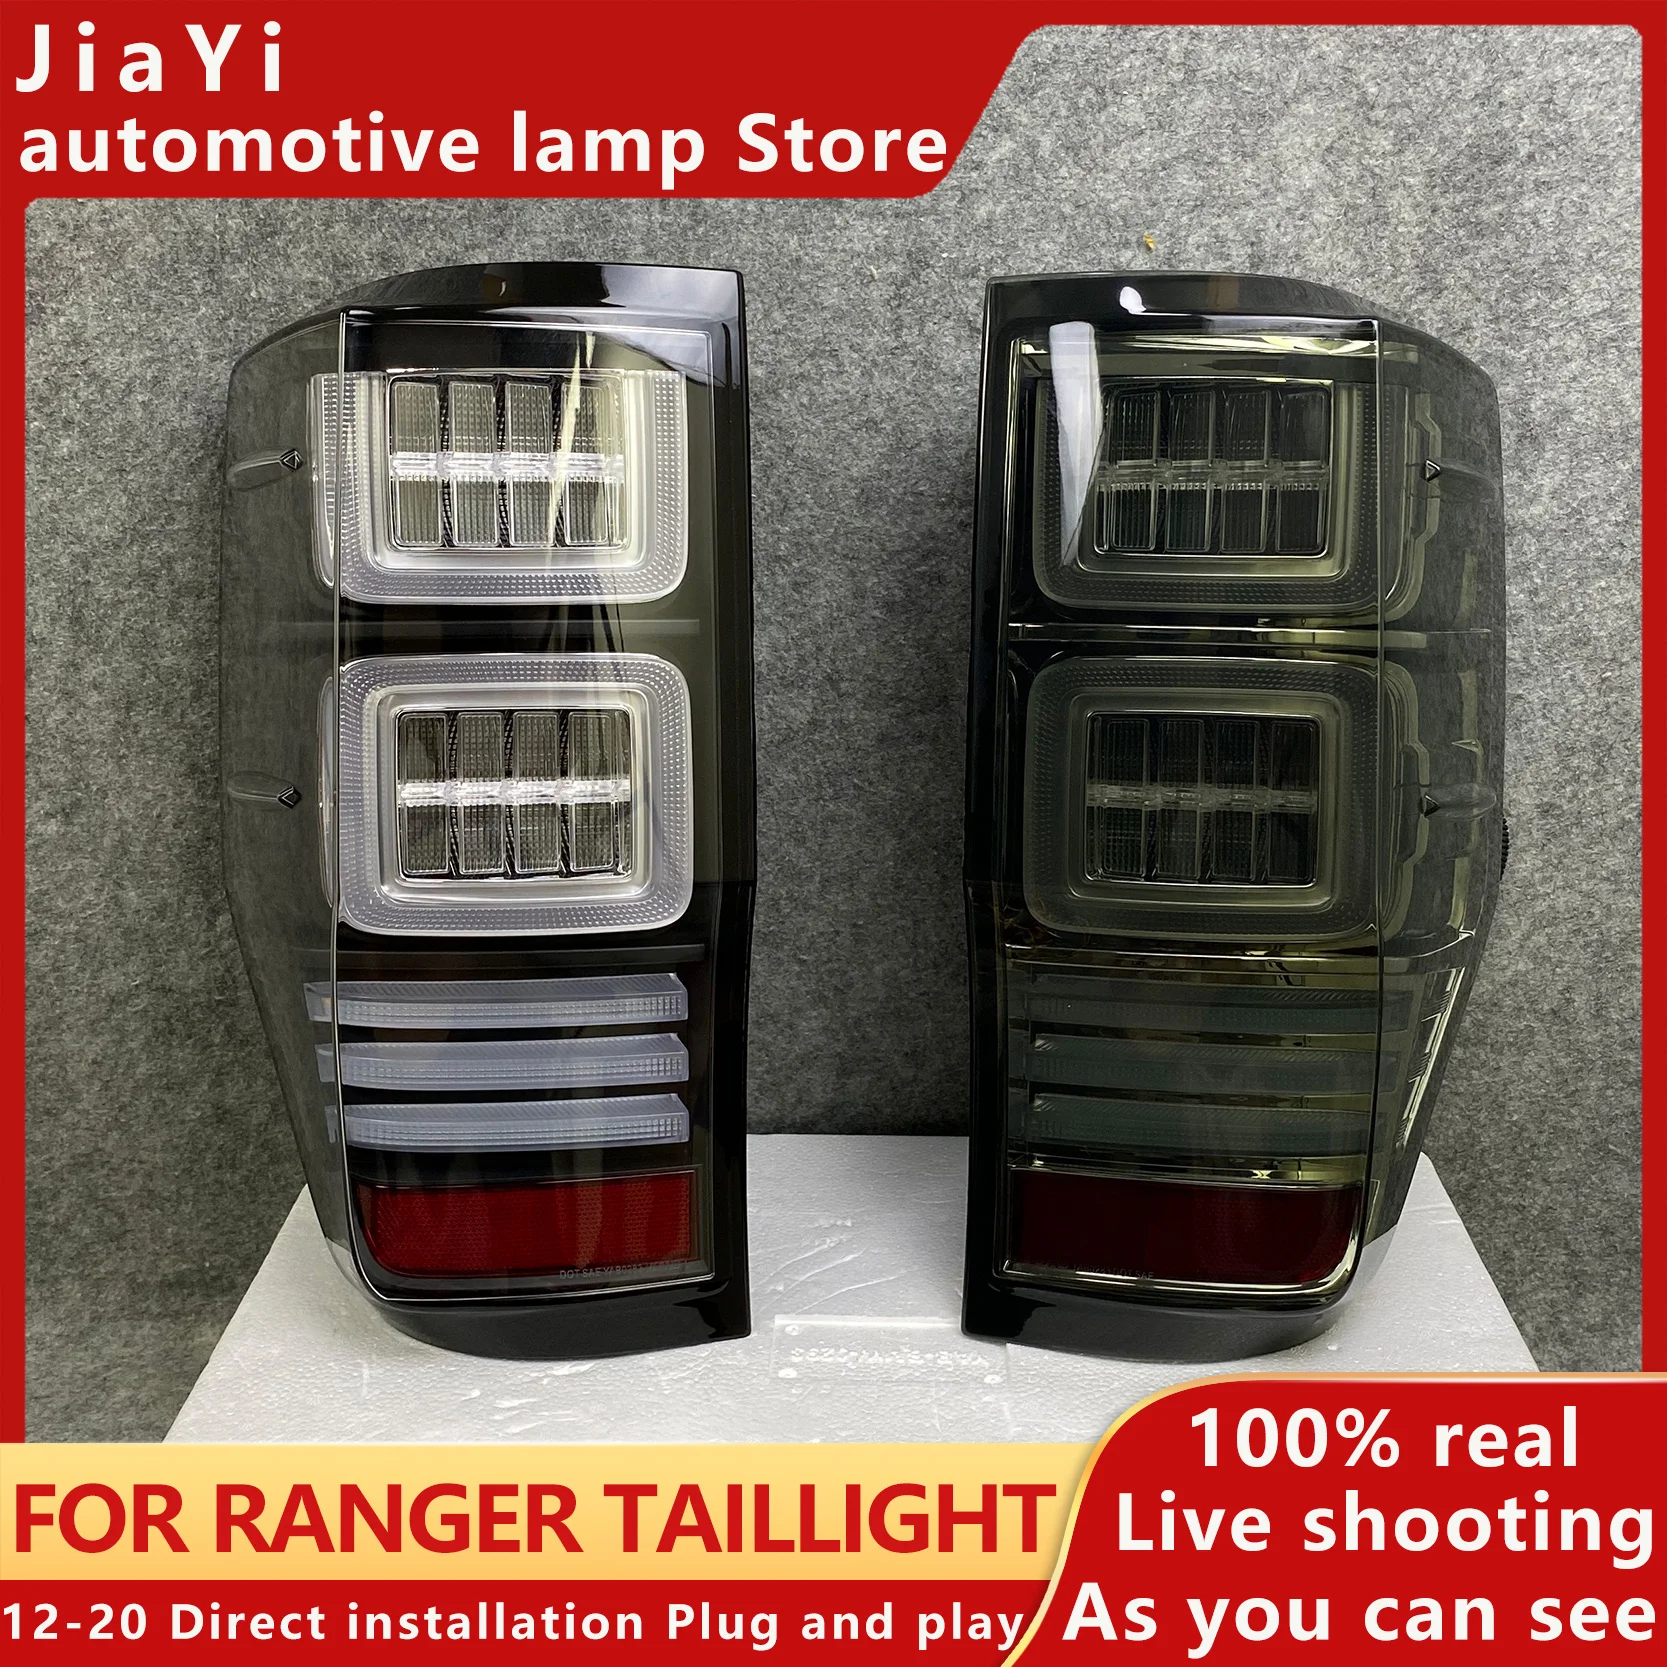 

Rear Running Lamp + Brake + Reverse Light + Dynamic Turn Signal Car LED Tail Light Taillight For Ranger T7 T8 2012 - 2019